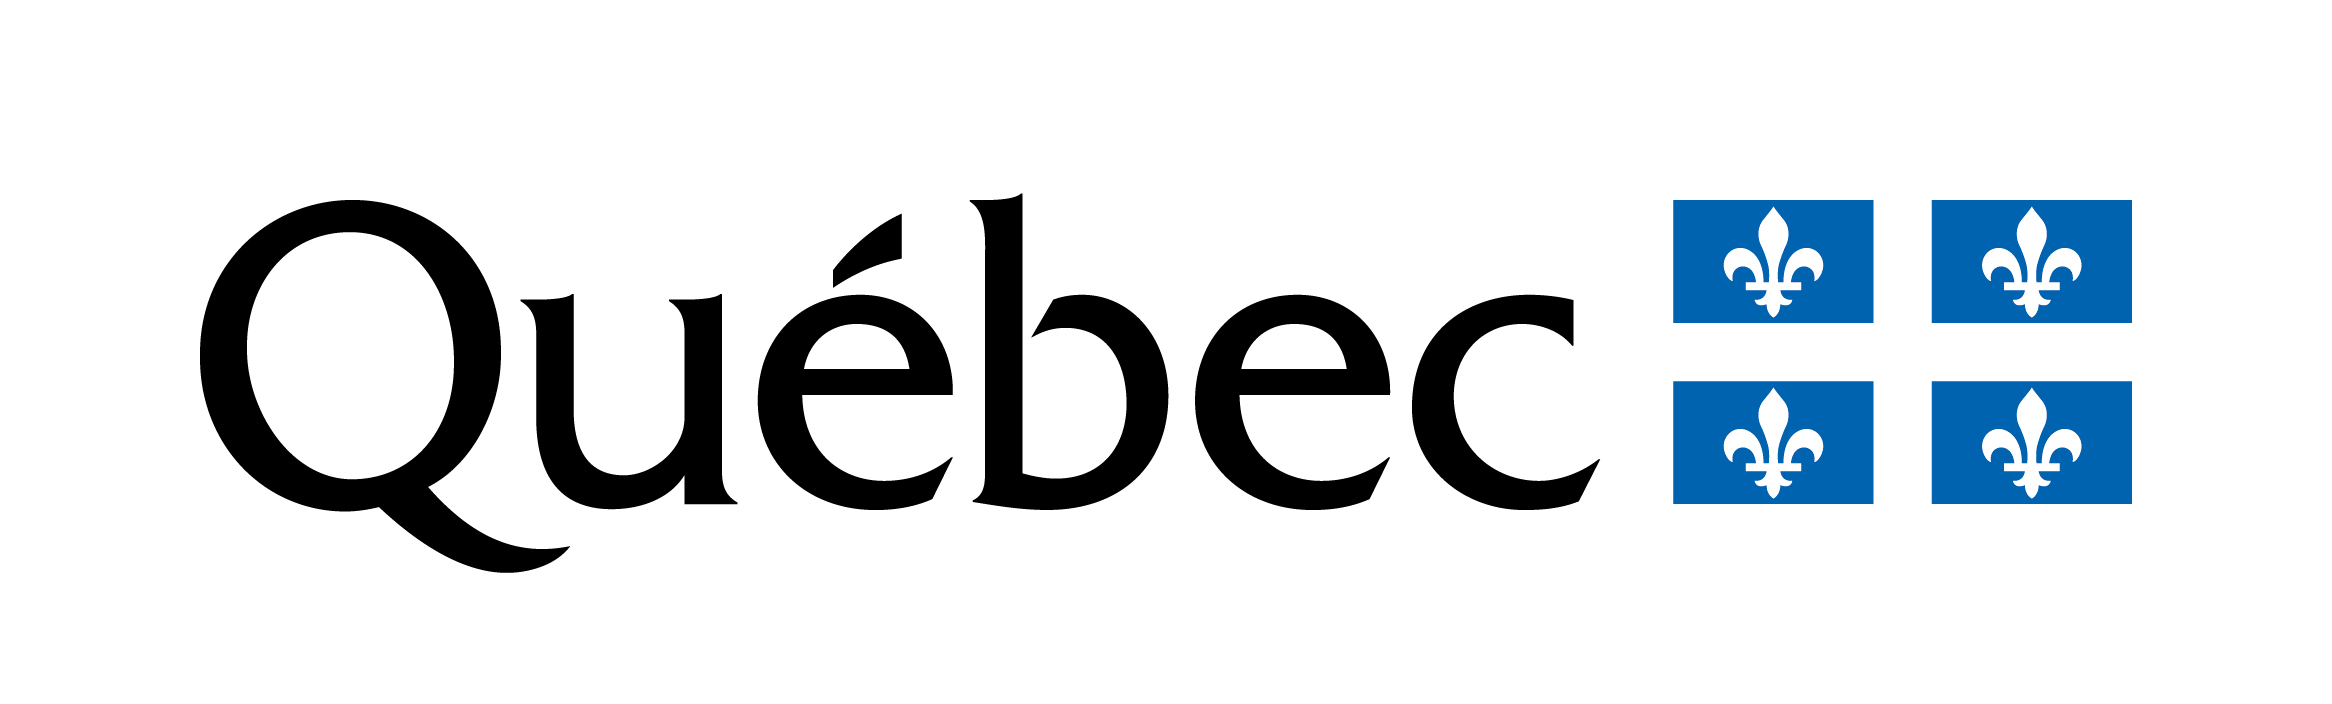 Logo Quebec